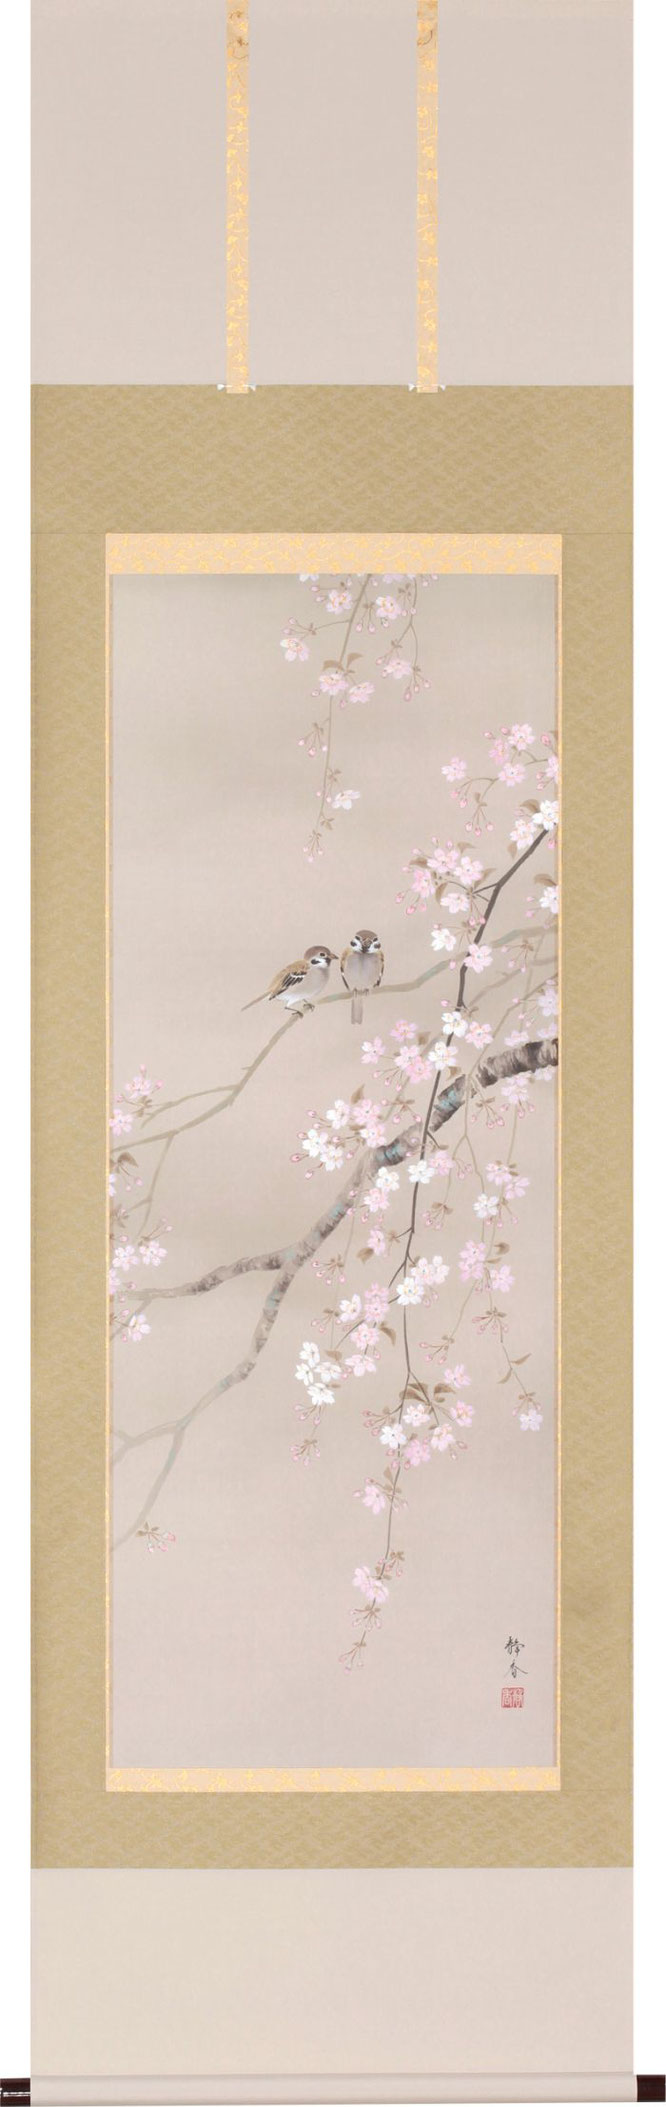 掛軸「桜に小禽」北条静香 尺五立（A-1258）